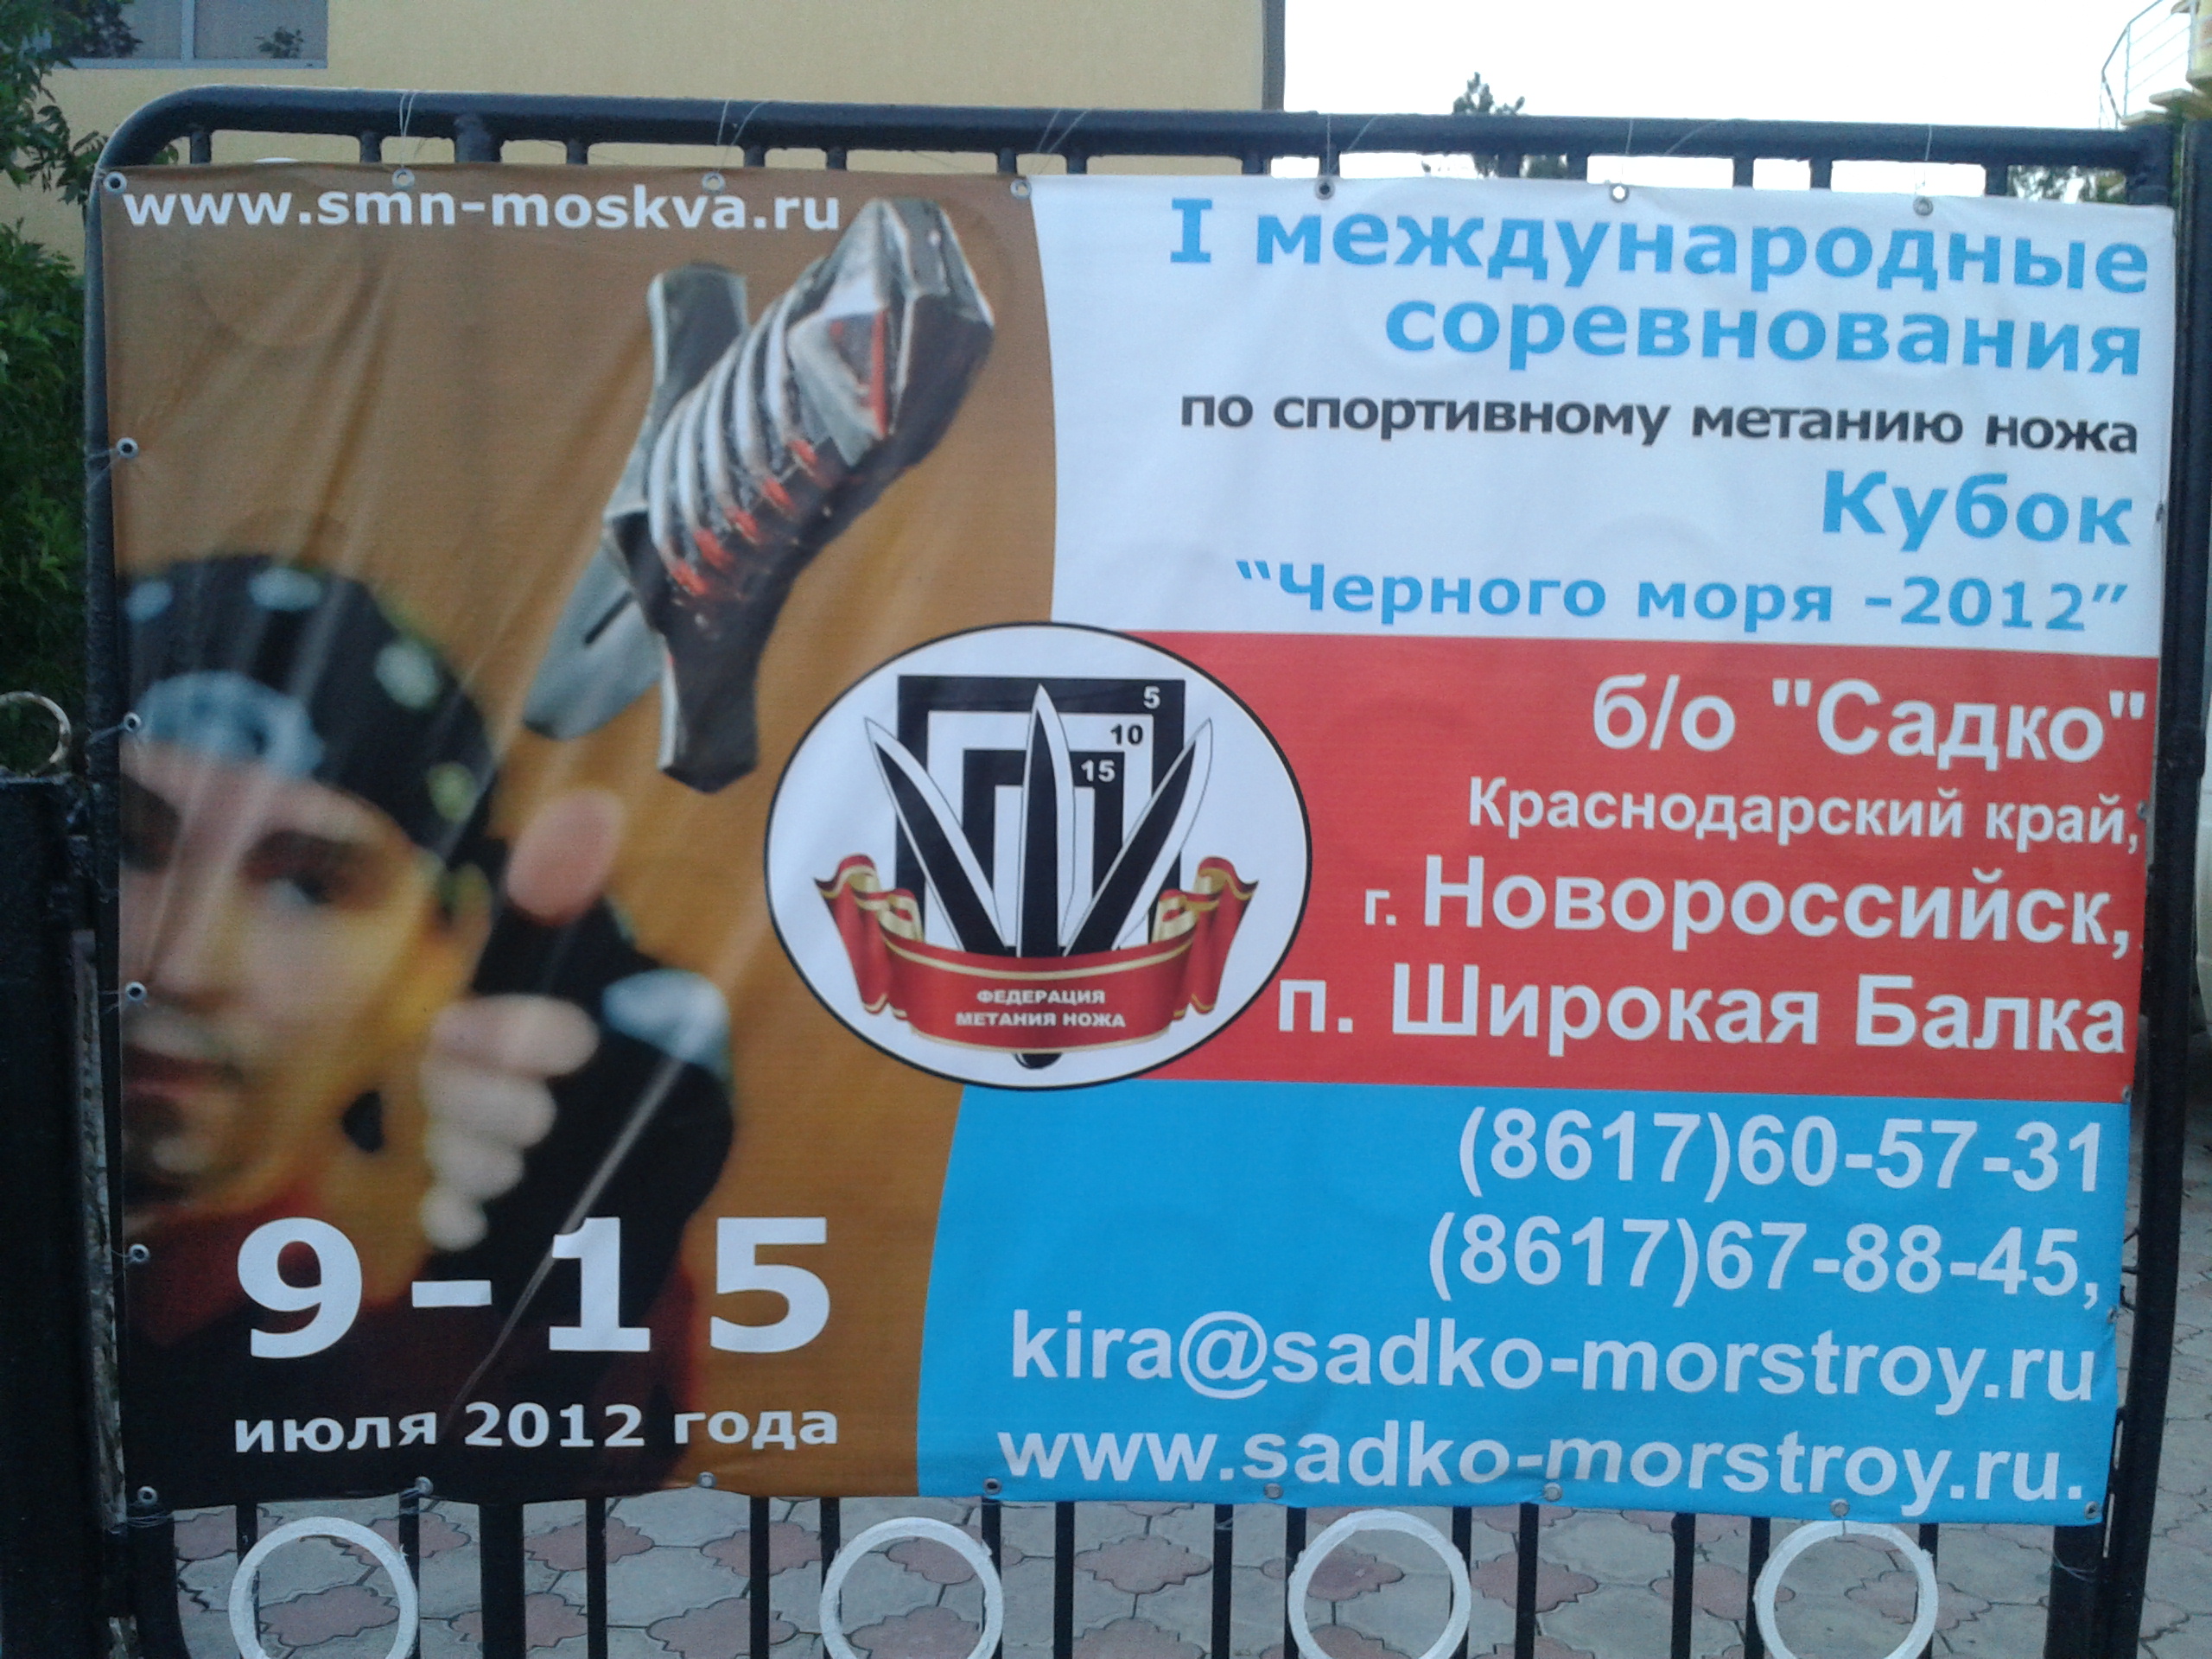 метание ножей, ,Июль 2012, Новороссийск, Широкая Балка 